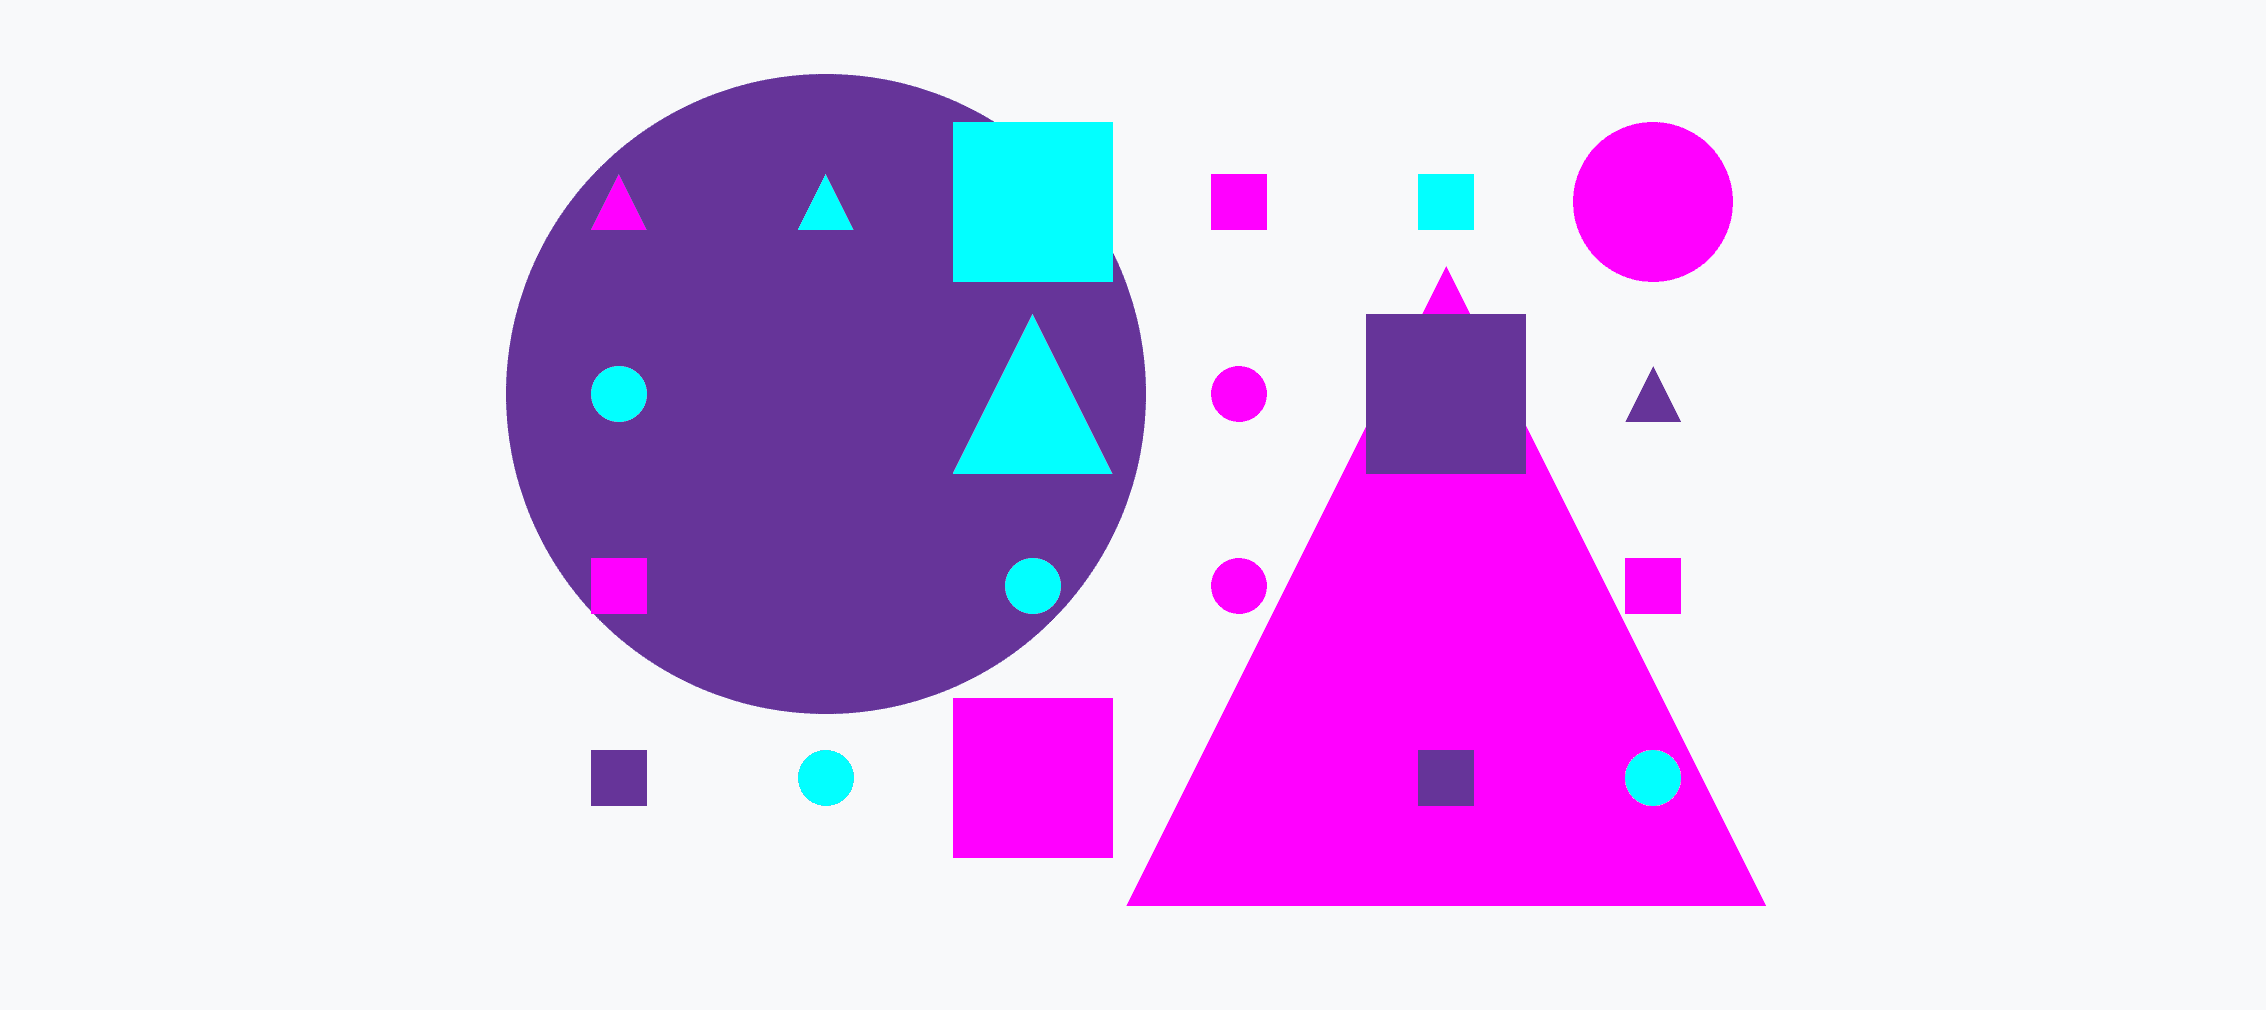 Una cuadrícula colorida de círculos pequeños y grandes, triángulos y cuadrados.